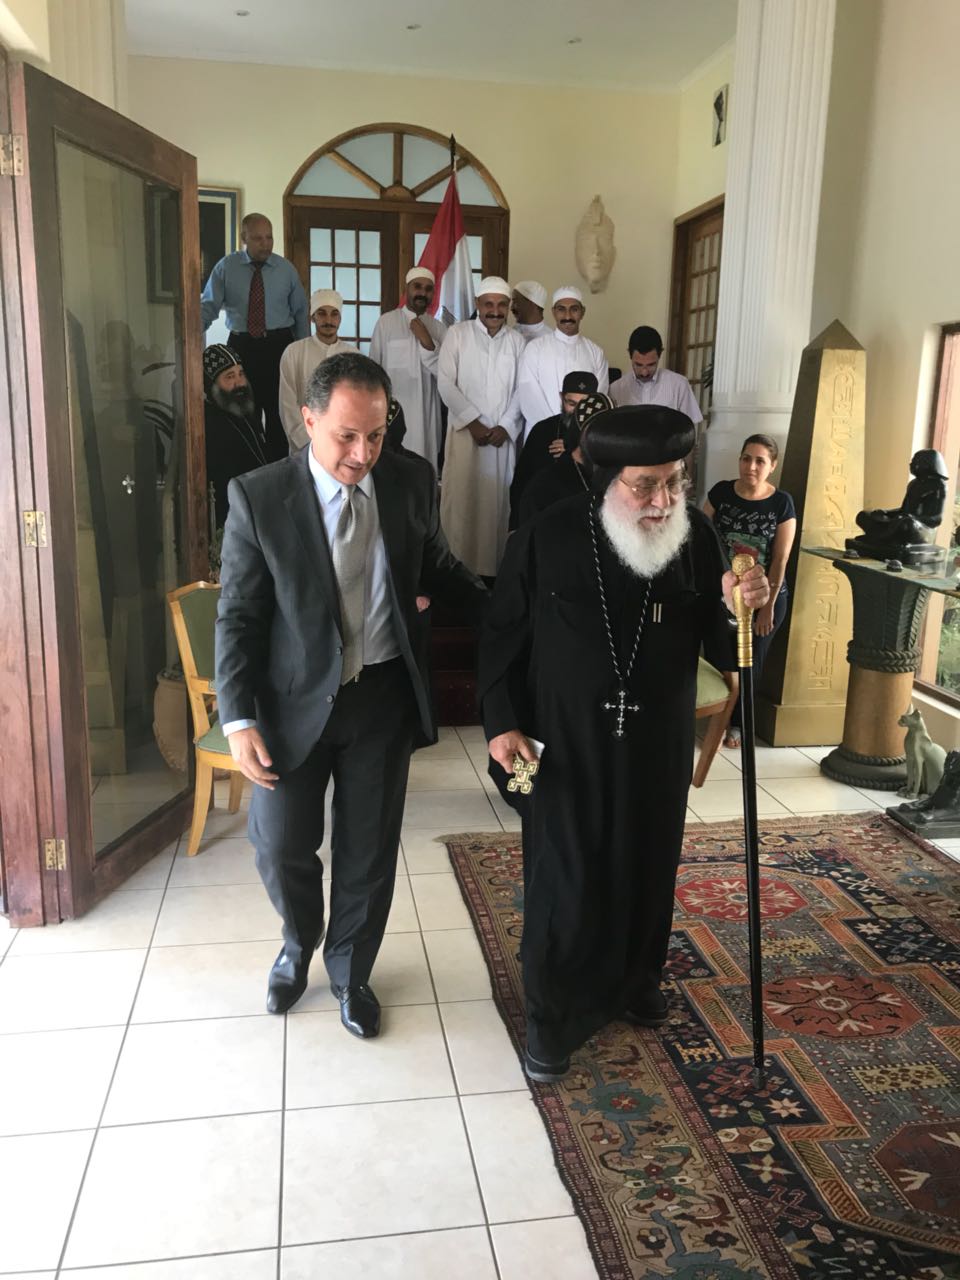 سفير مصر فى جنوب افريقيا يرافق أسقف الكنيسة فى المقر الانتخابى